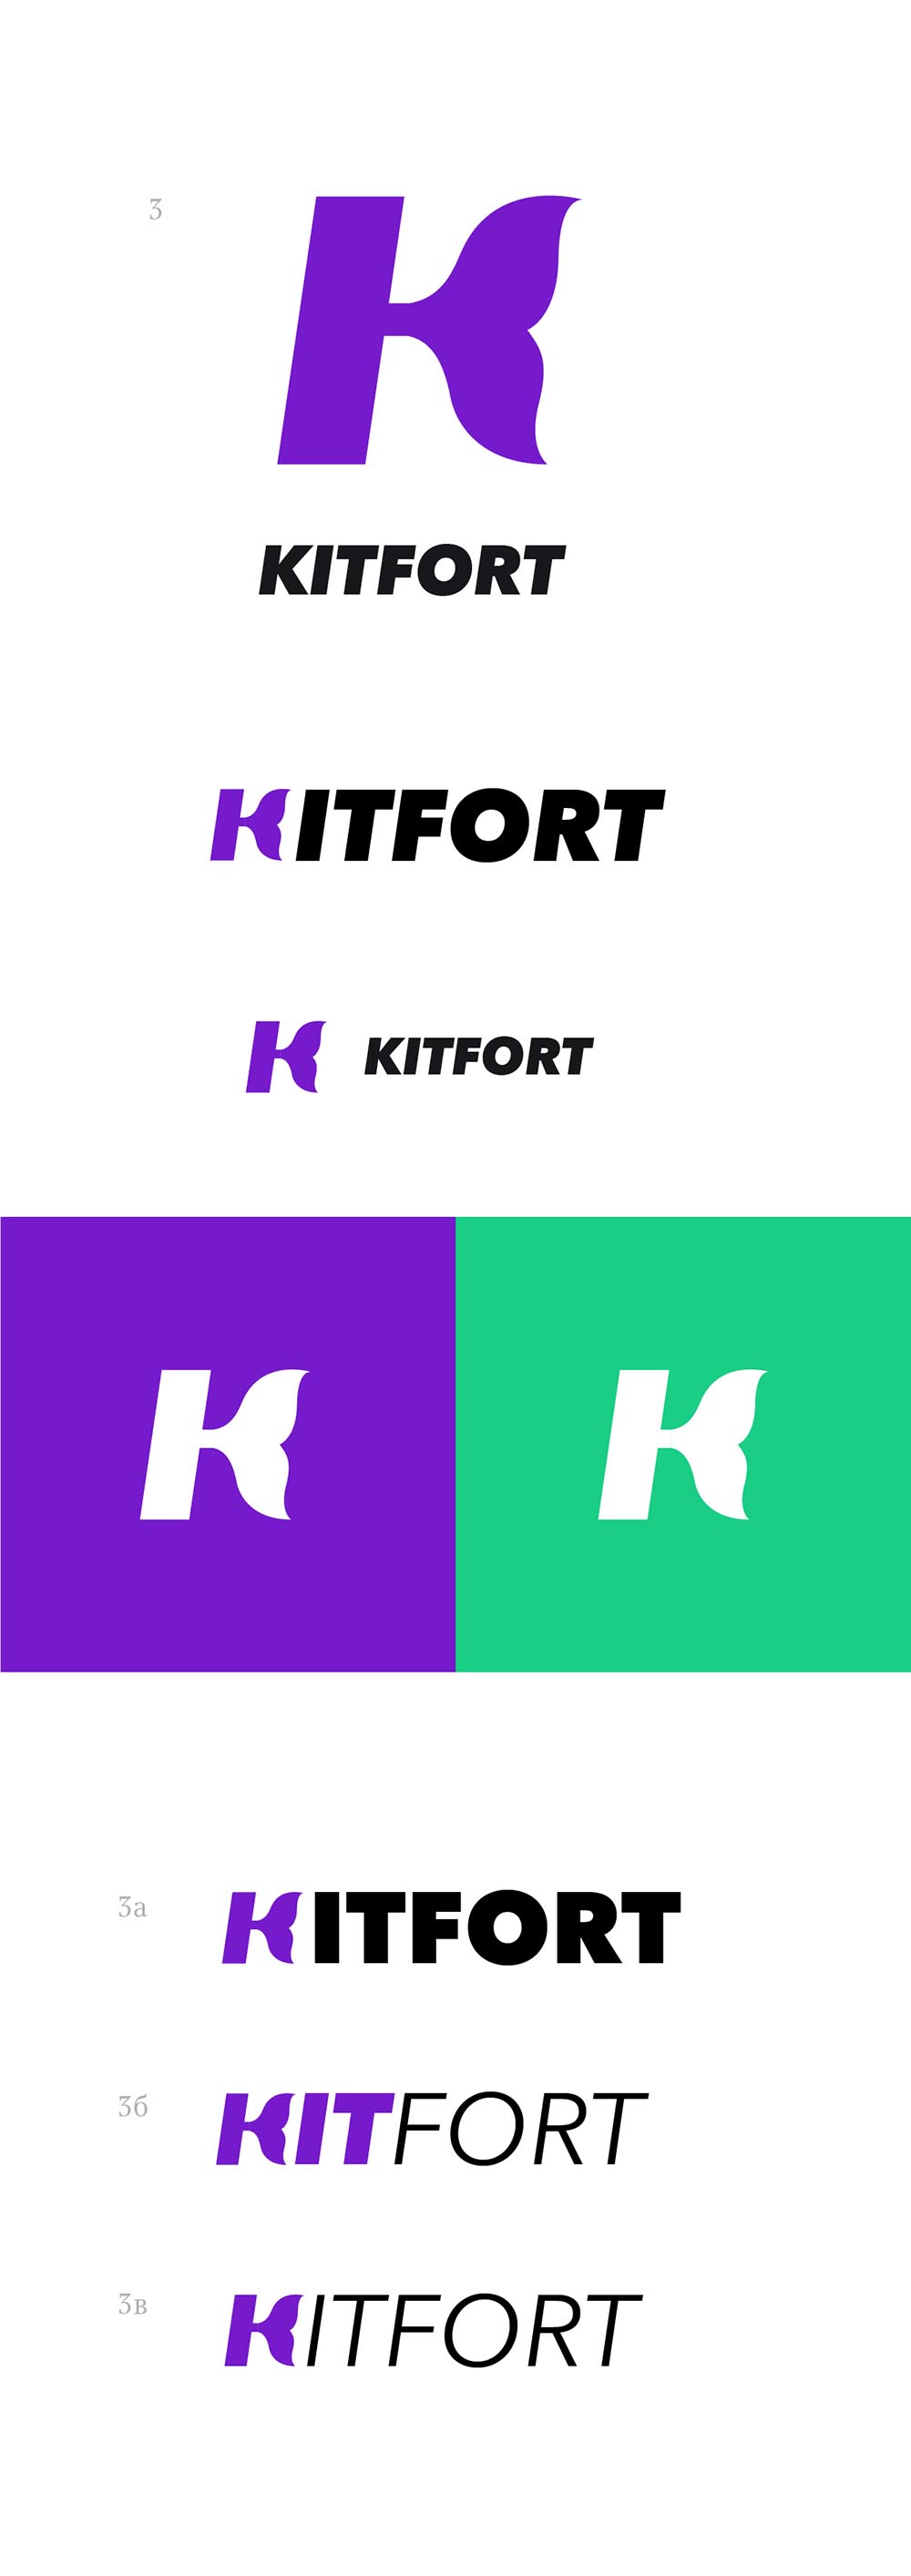 kitfort process 01